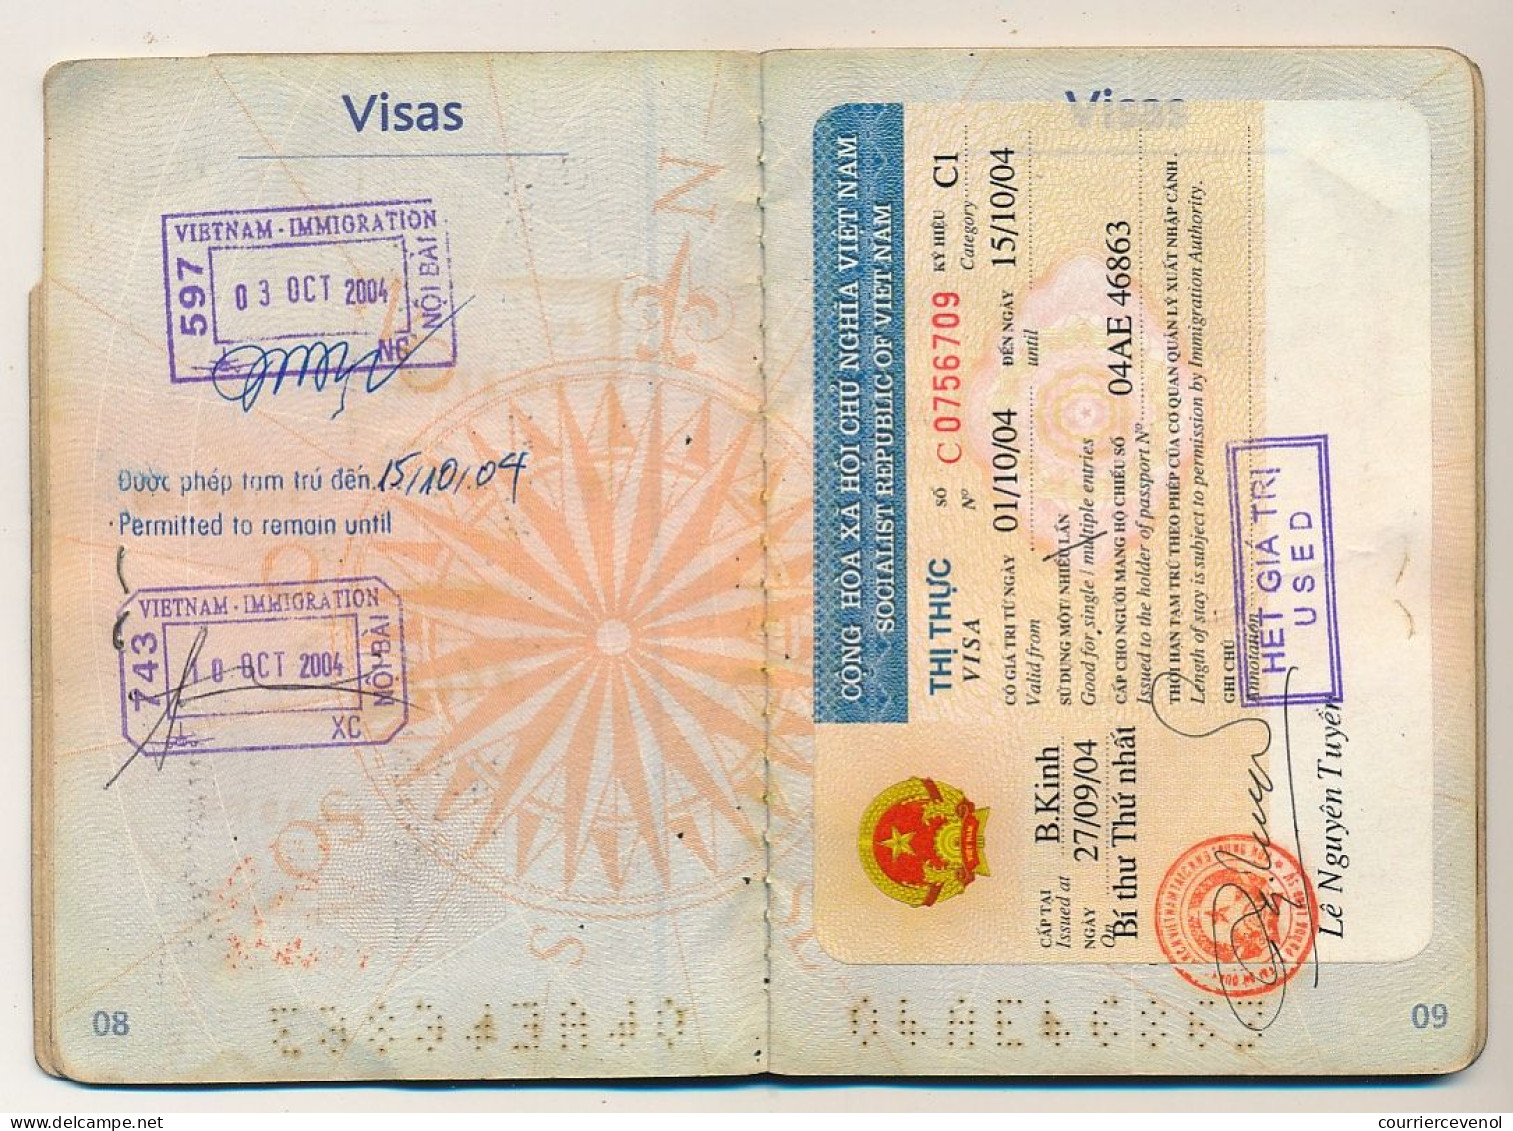 FRANCE - Passeport D'un Marseillais établi à PEKIN (Chine) - Très Nombreux Visas Viet-Nam, Malaisie, Mongolie...2007/08 - Covers & Documents